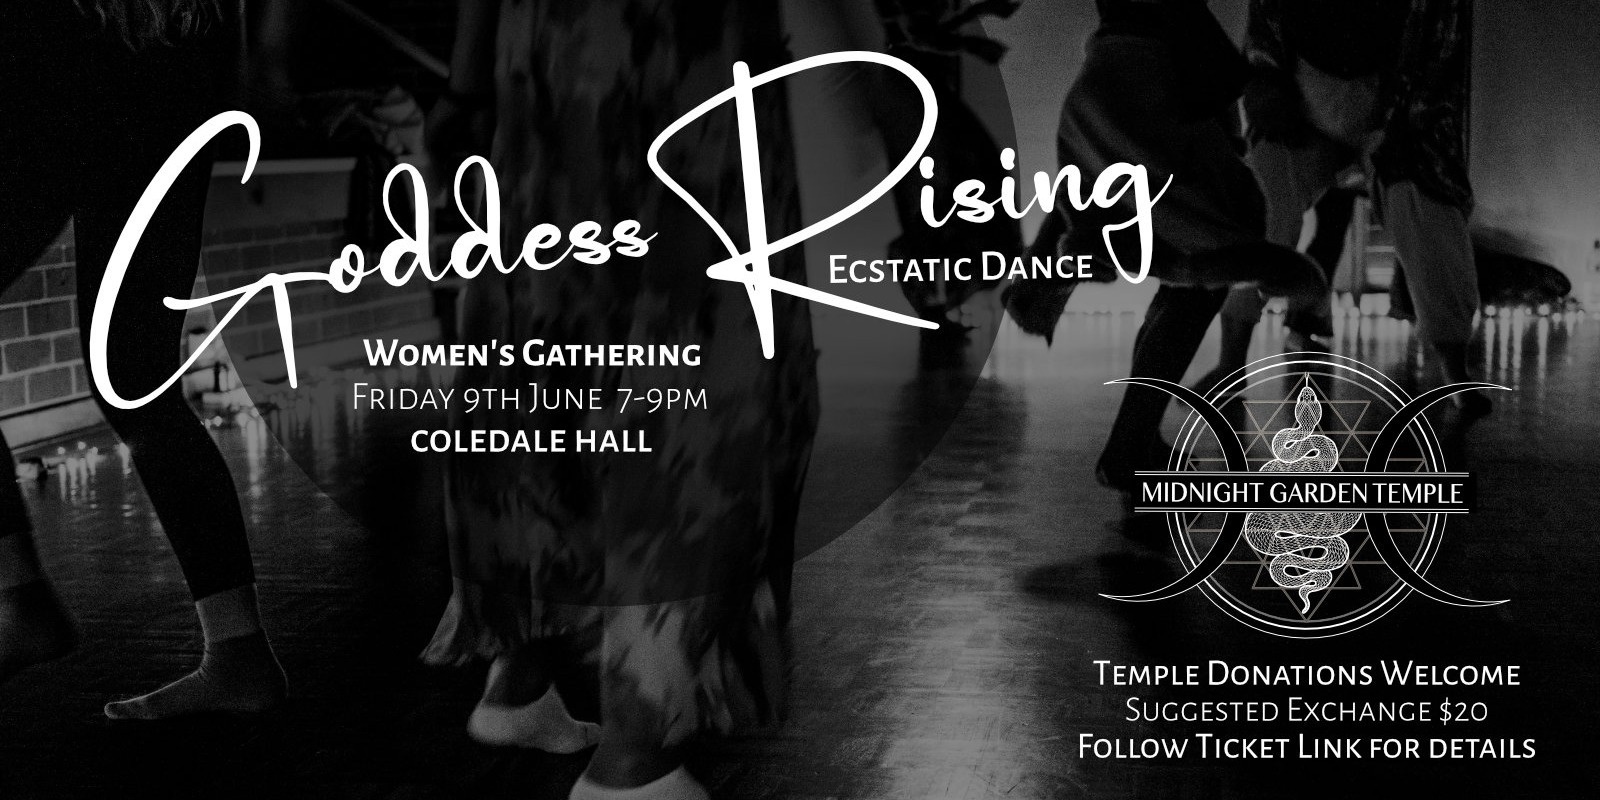 Banner image for Goddess Rising Ecstatic Dance - Women's Gathering